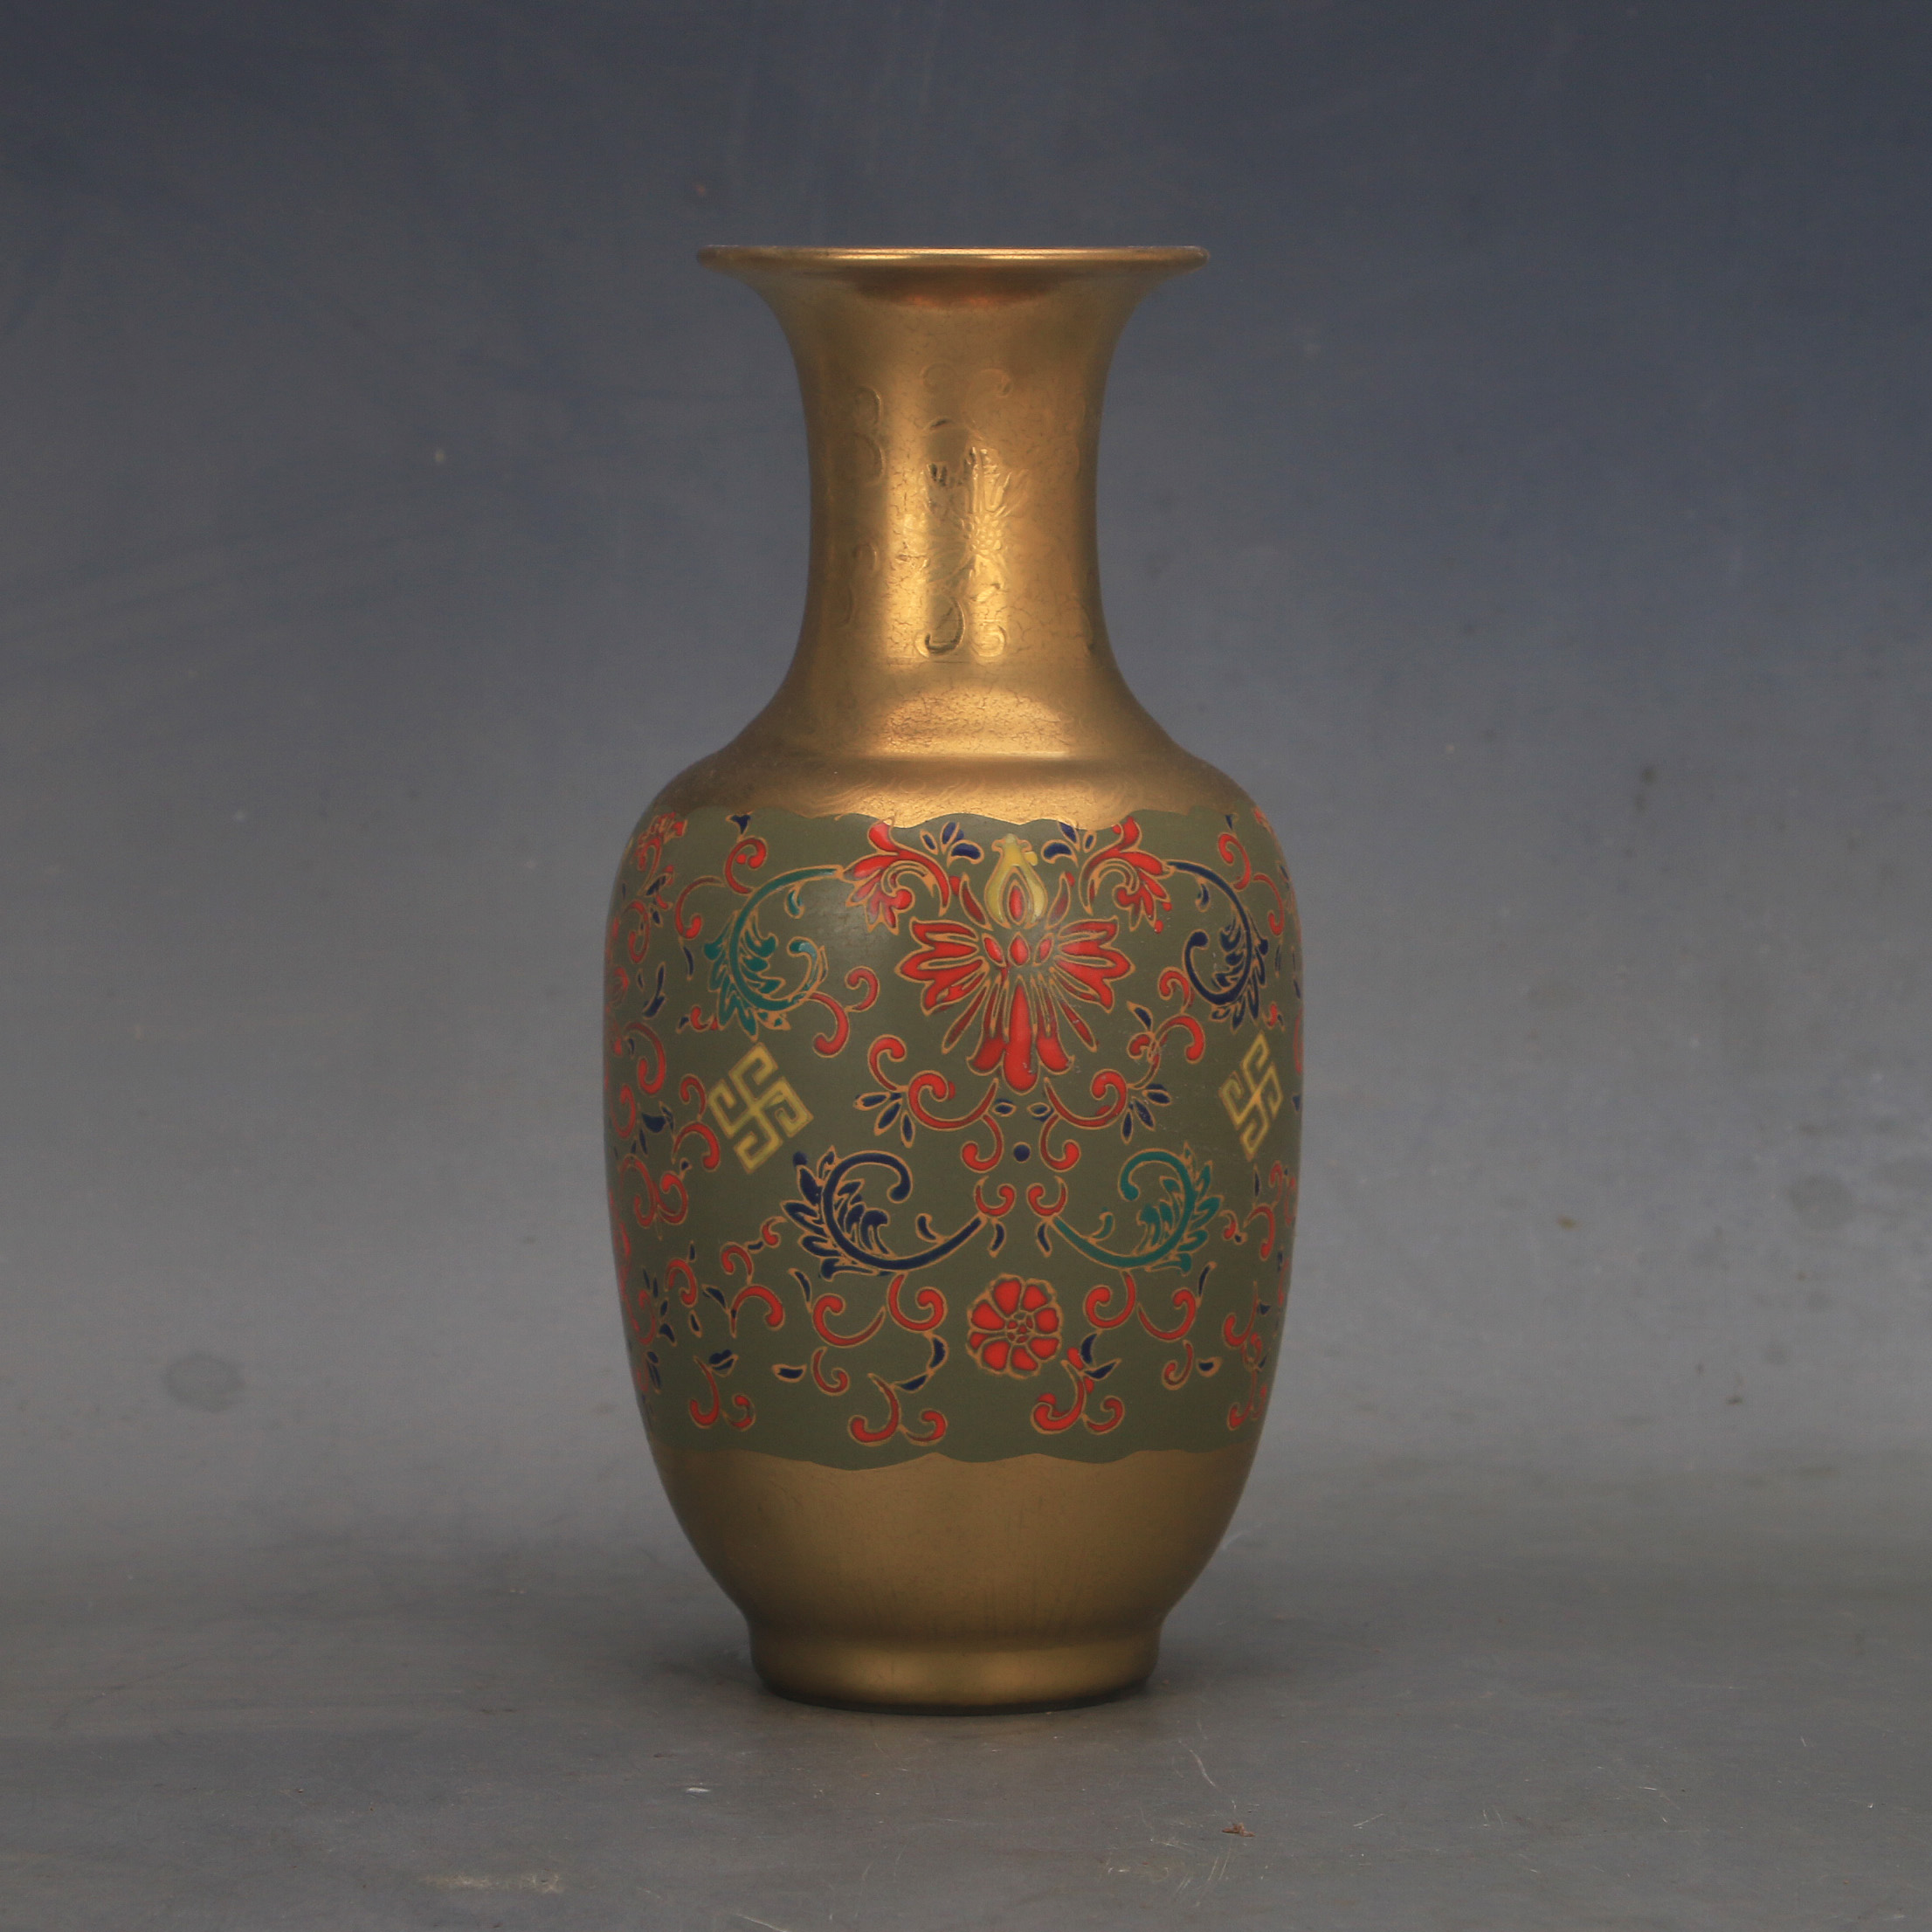 大明宣德年鎏金龙纹六方瓶仿古瓷器旧货古玩老物件收藏装饰摆设-Taobao